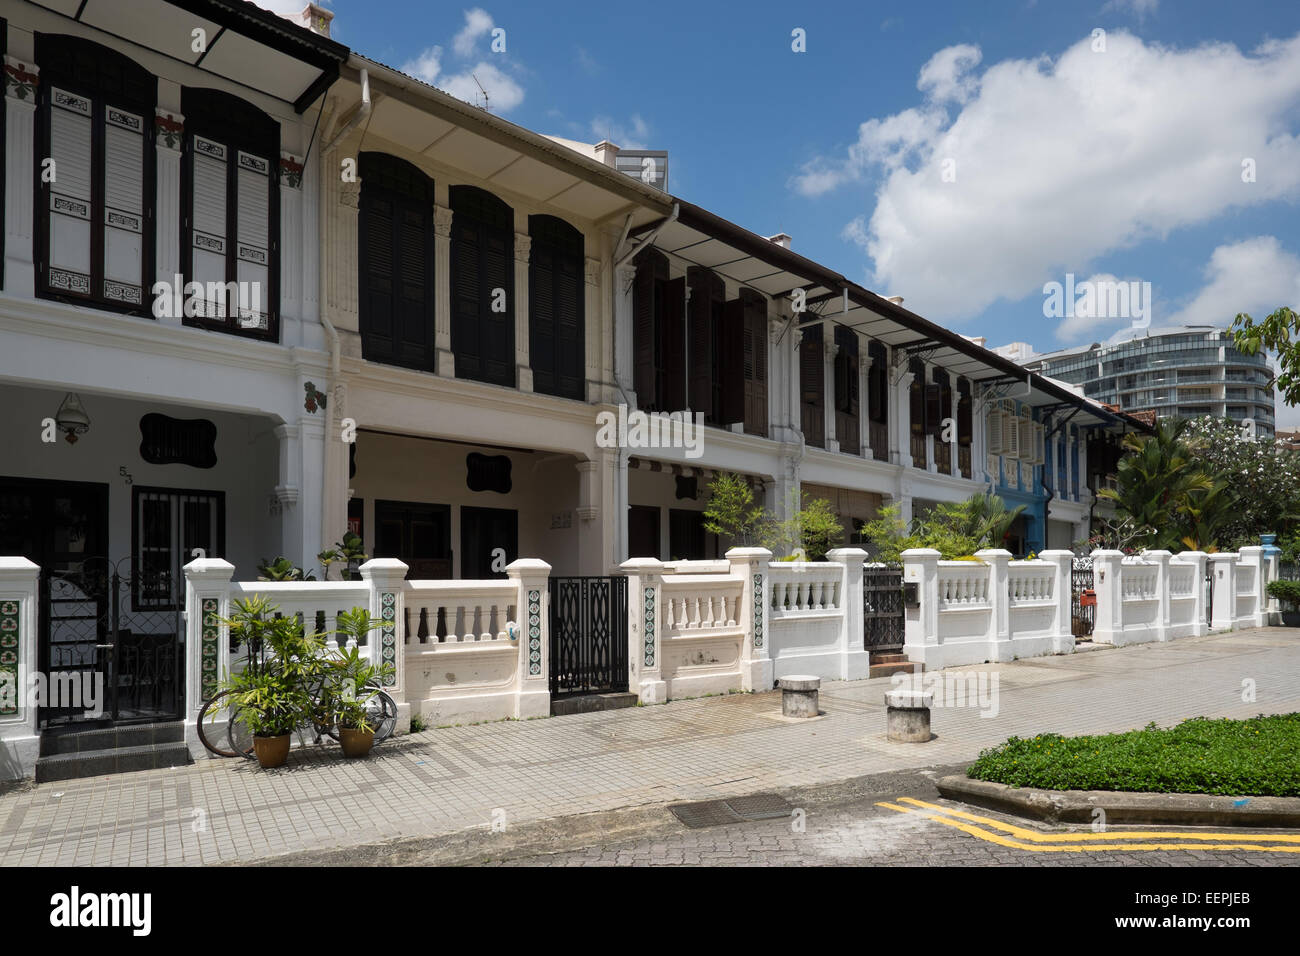 Architettura coloniale nel centro storico di Colle smeraldo in Singapore. Foto Stock